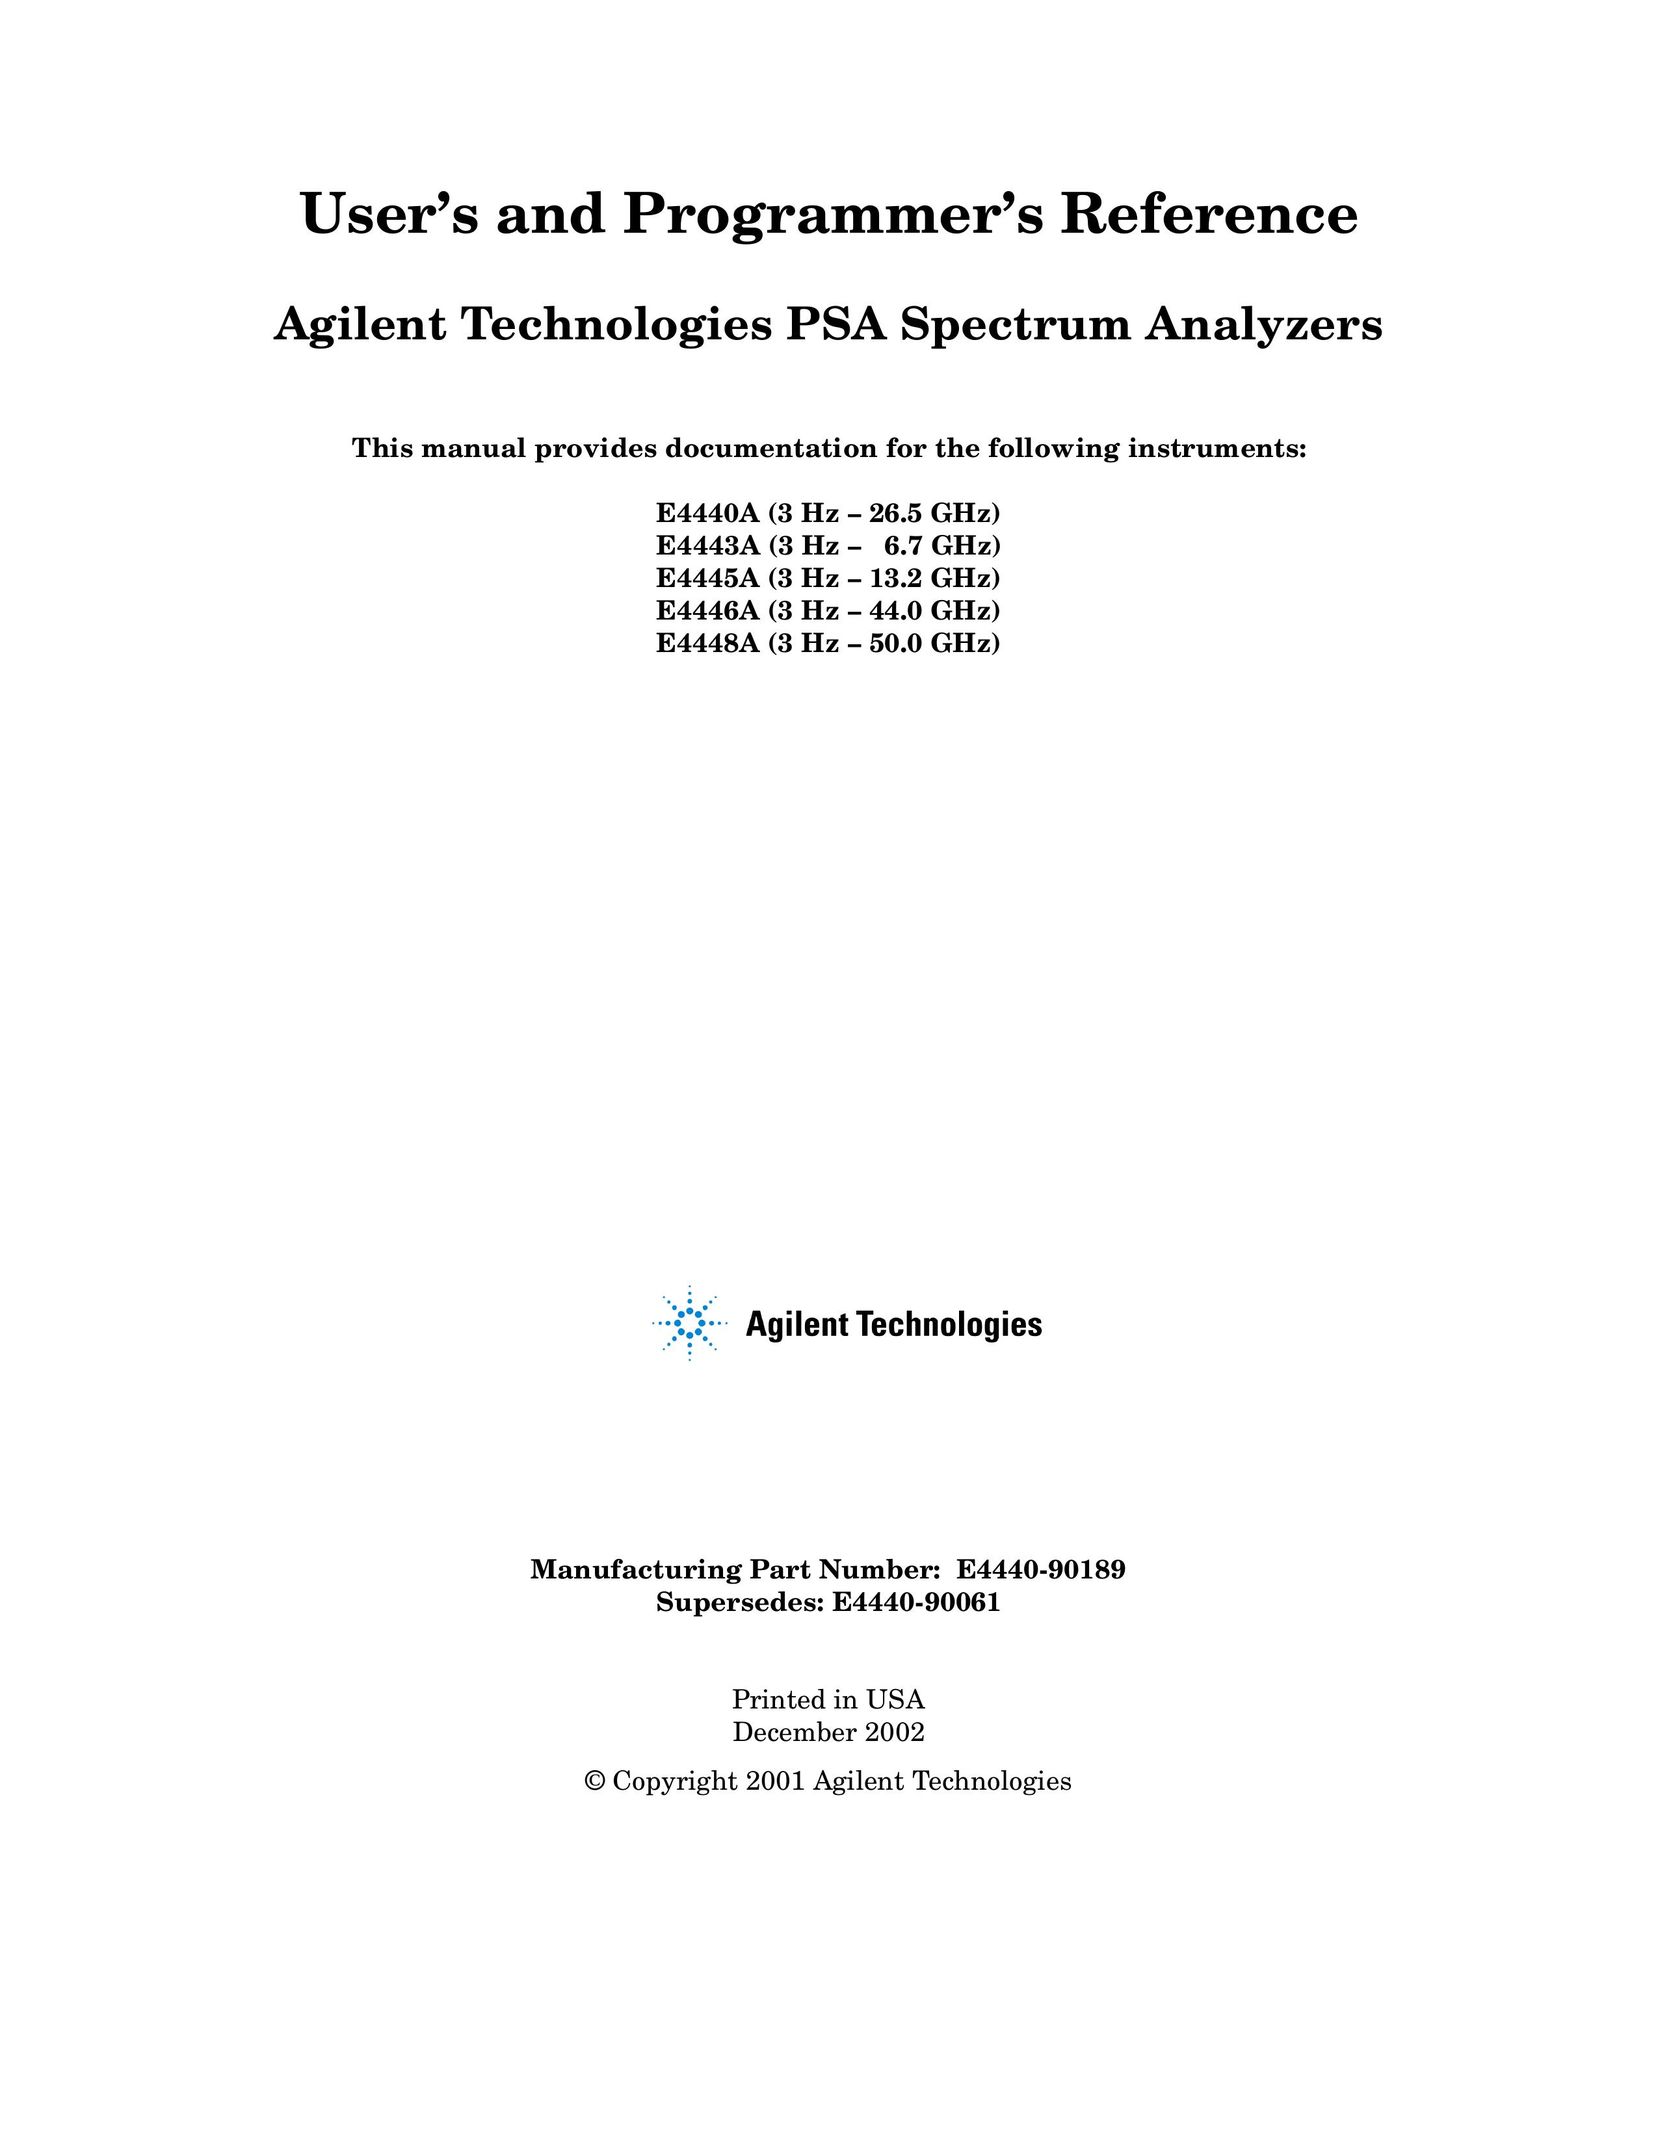 Agilent Technologies E4448A Saw User Manual